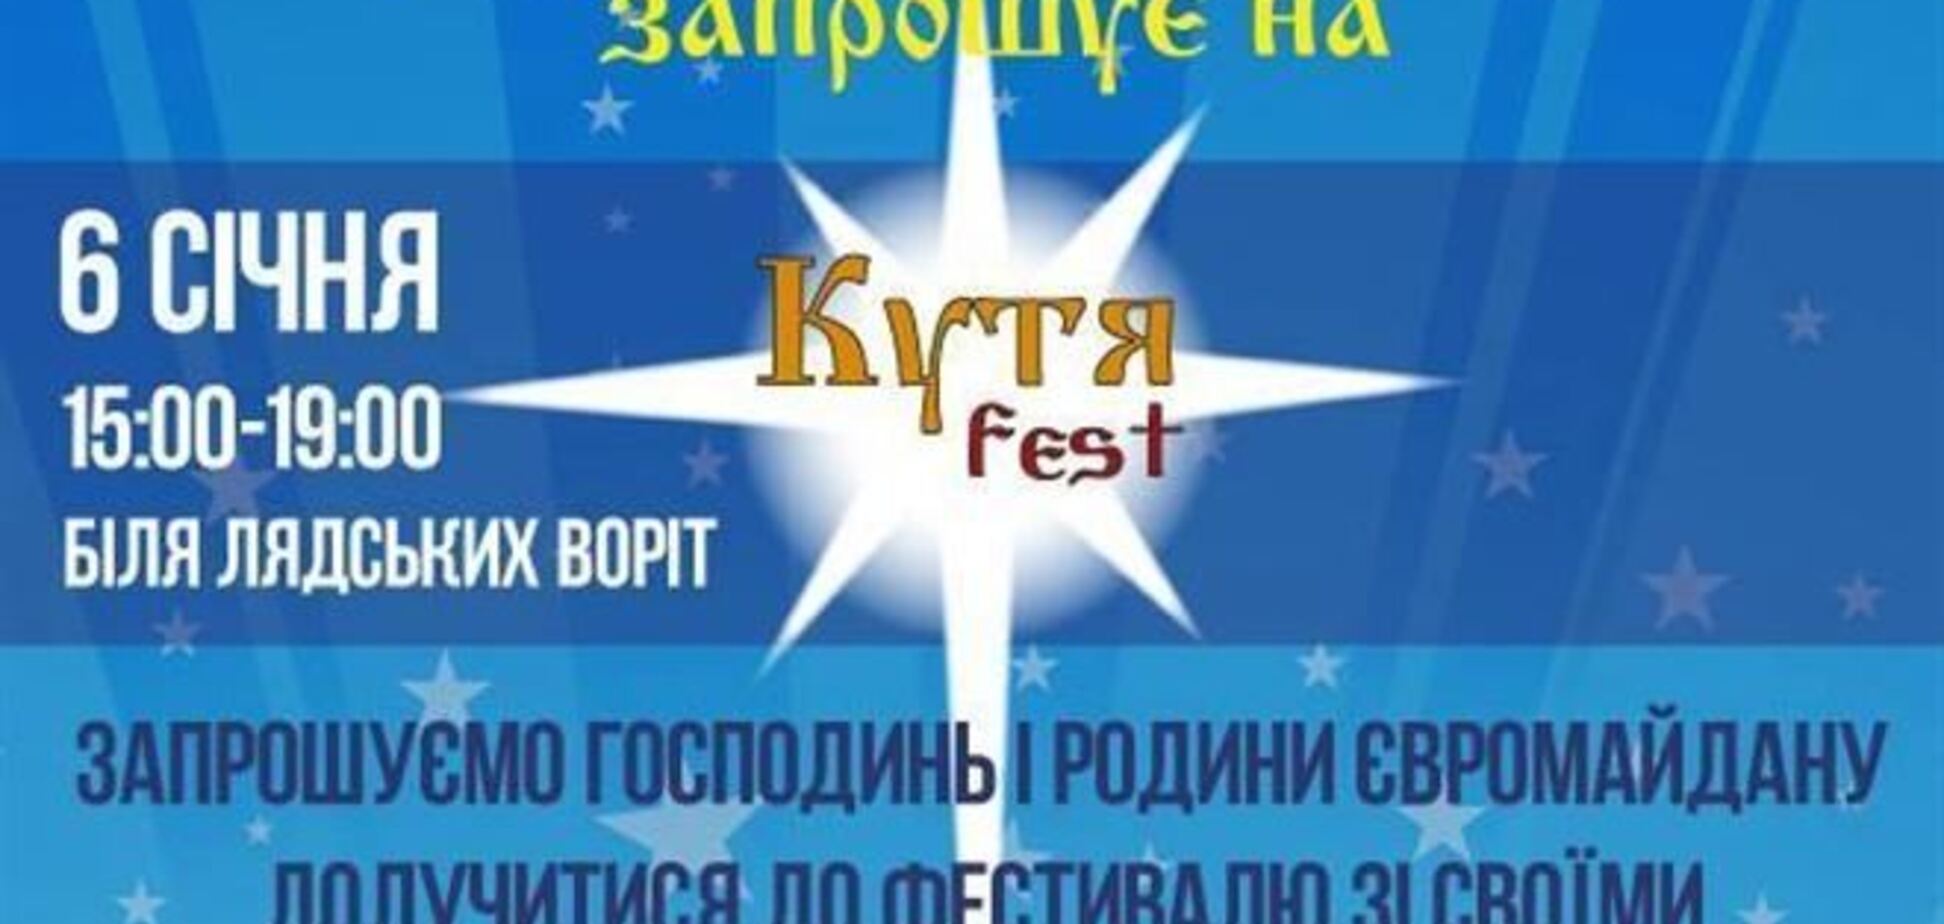 На Евромайдане в понедельник пройдет рождественский КУТЯfest